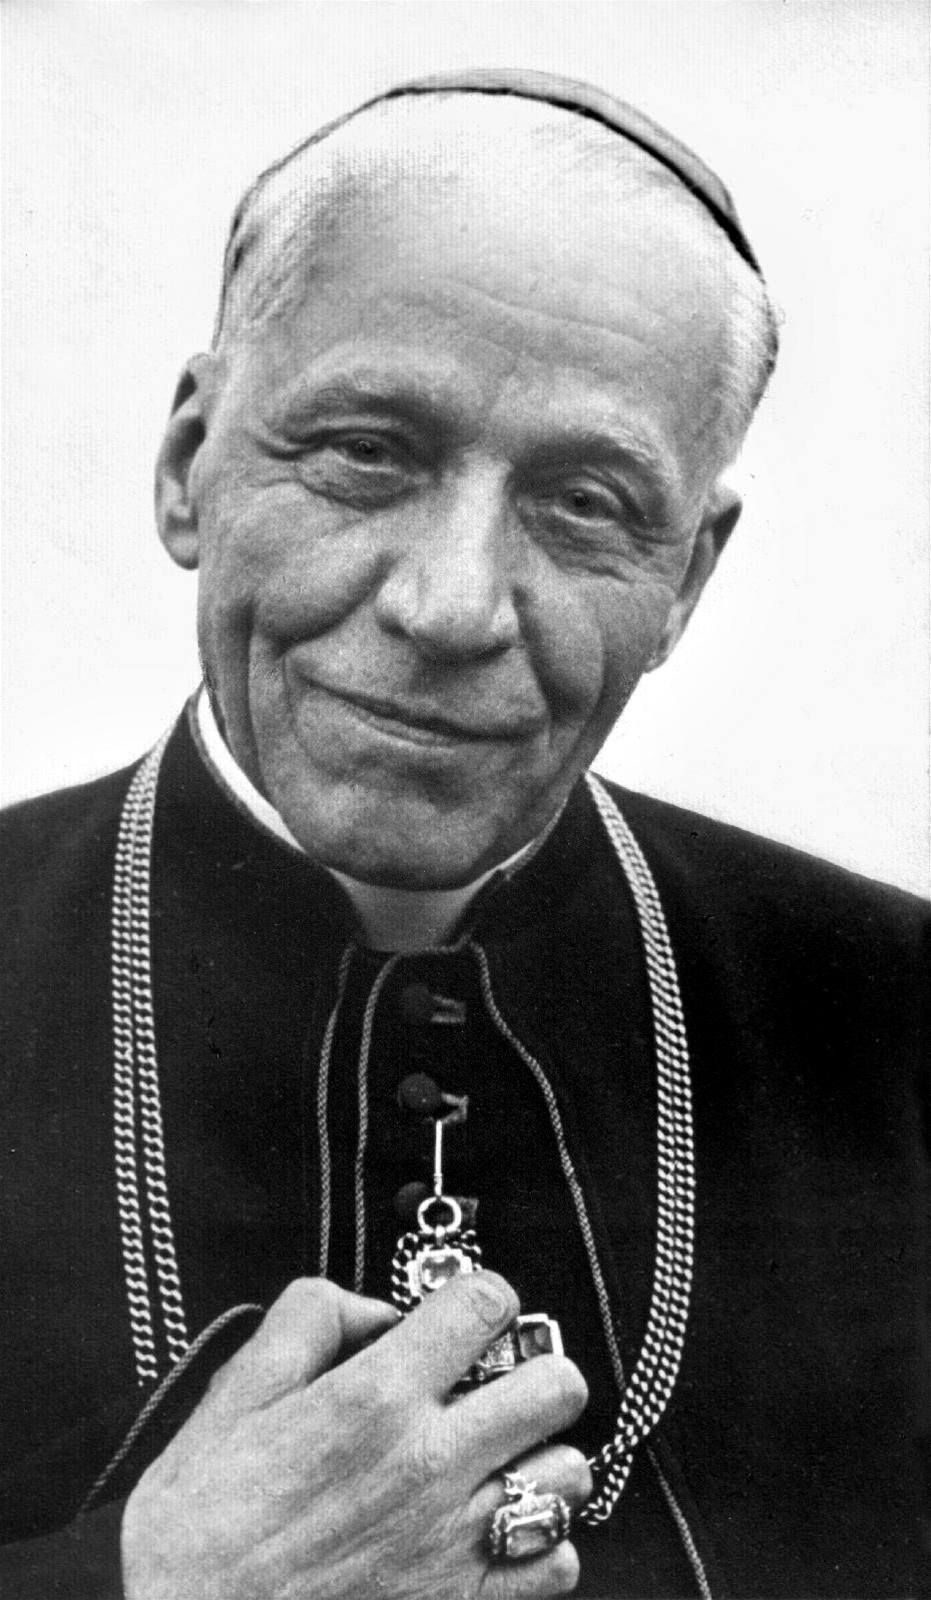 Kardinal Josef Beran